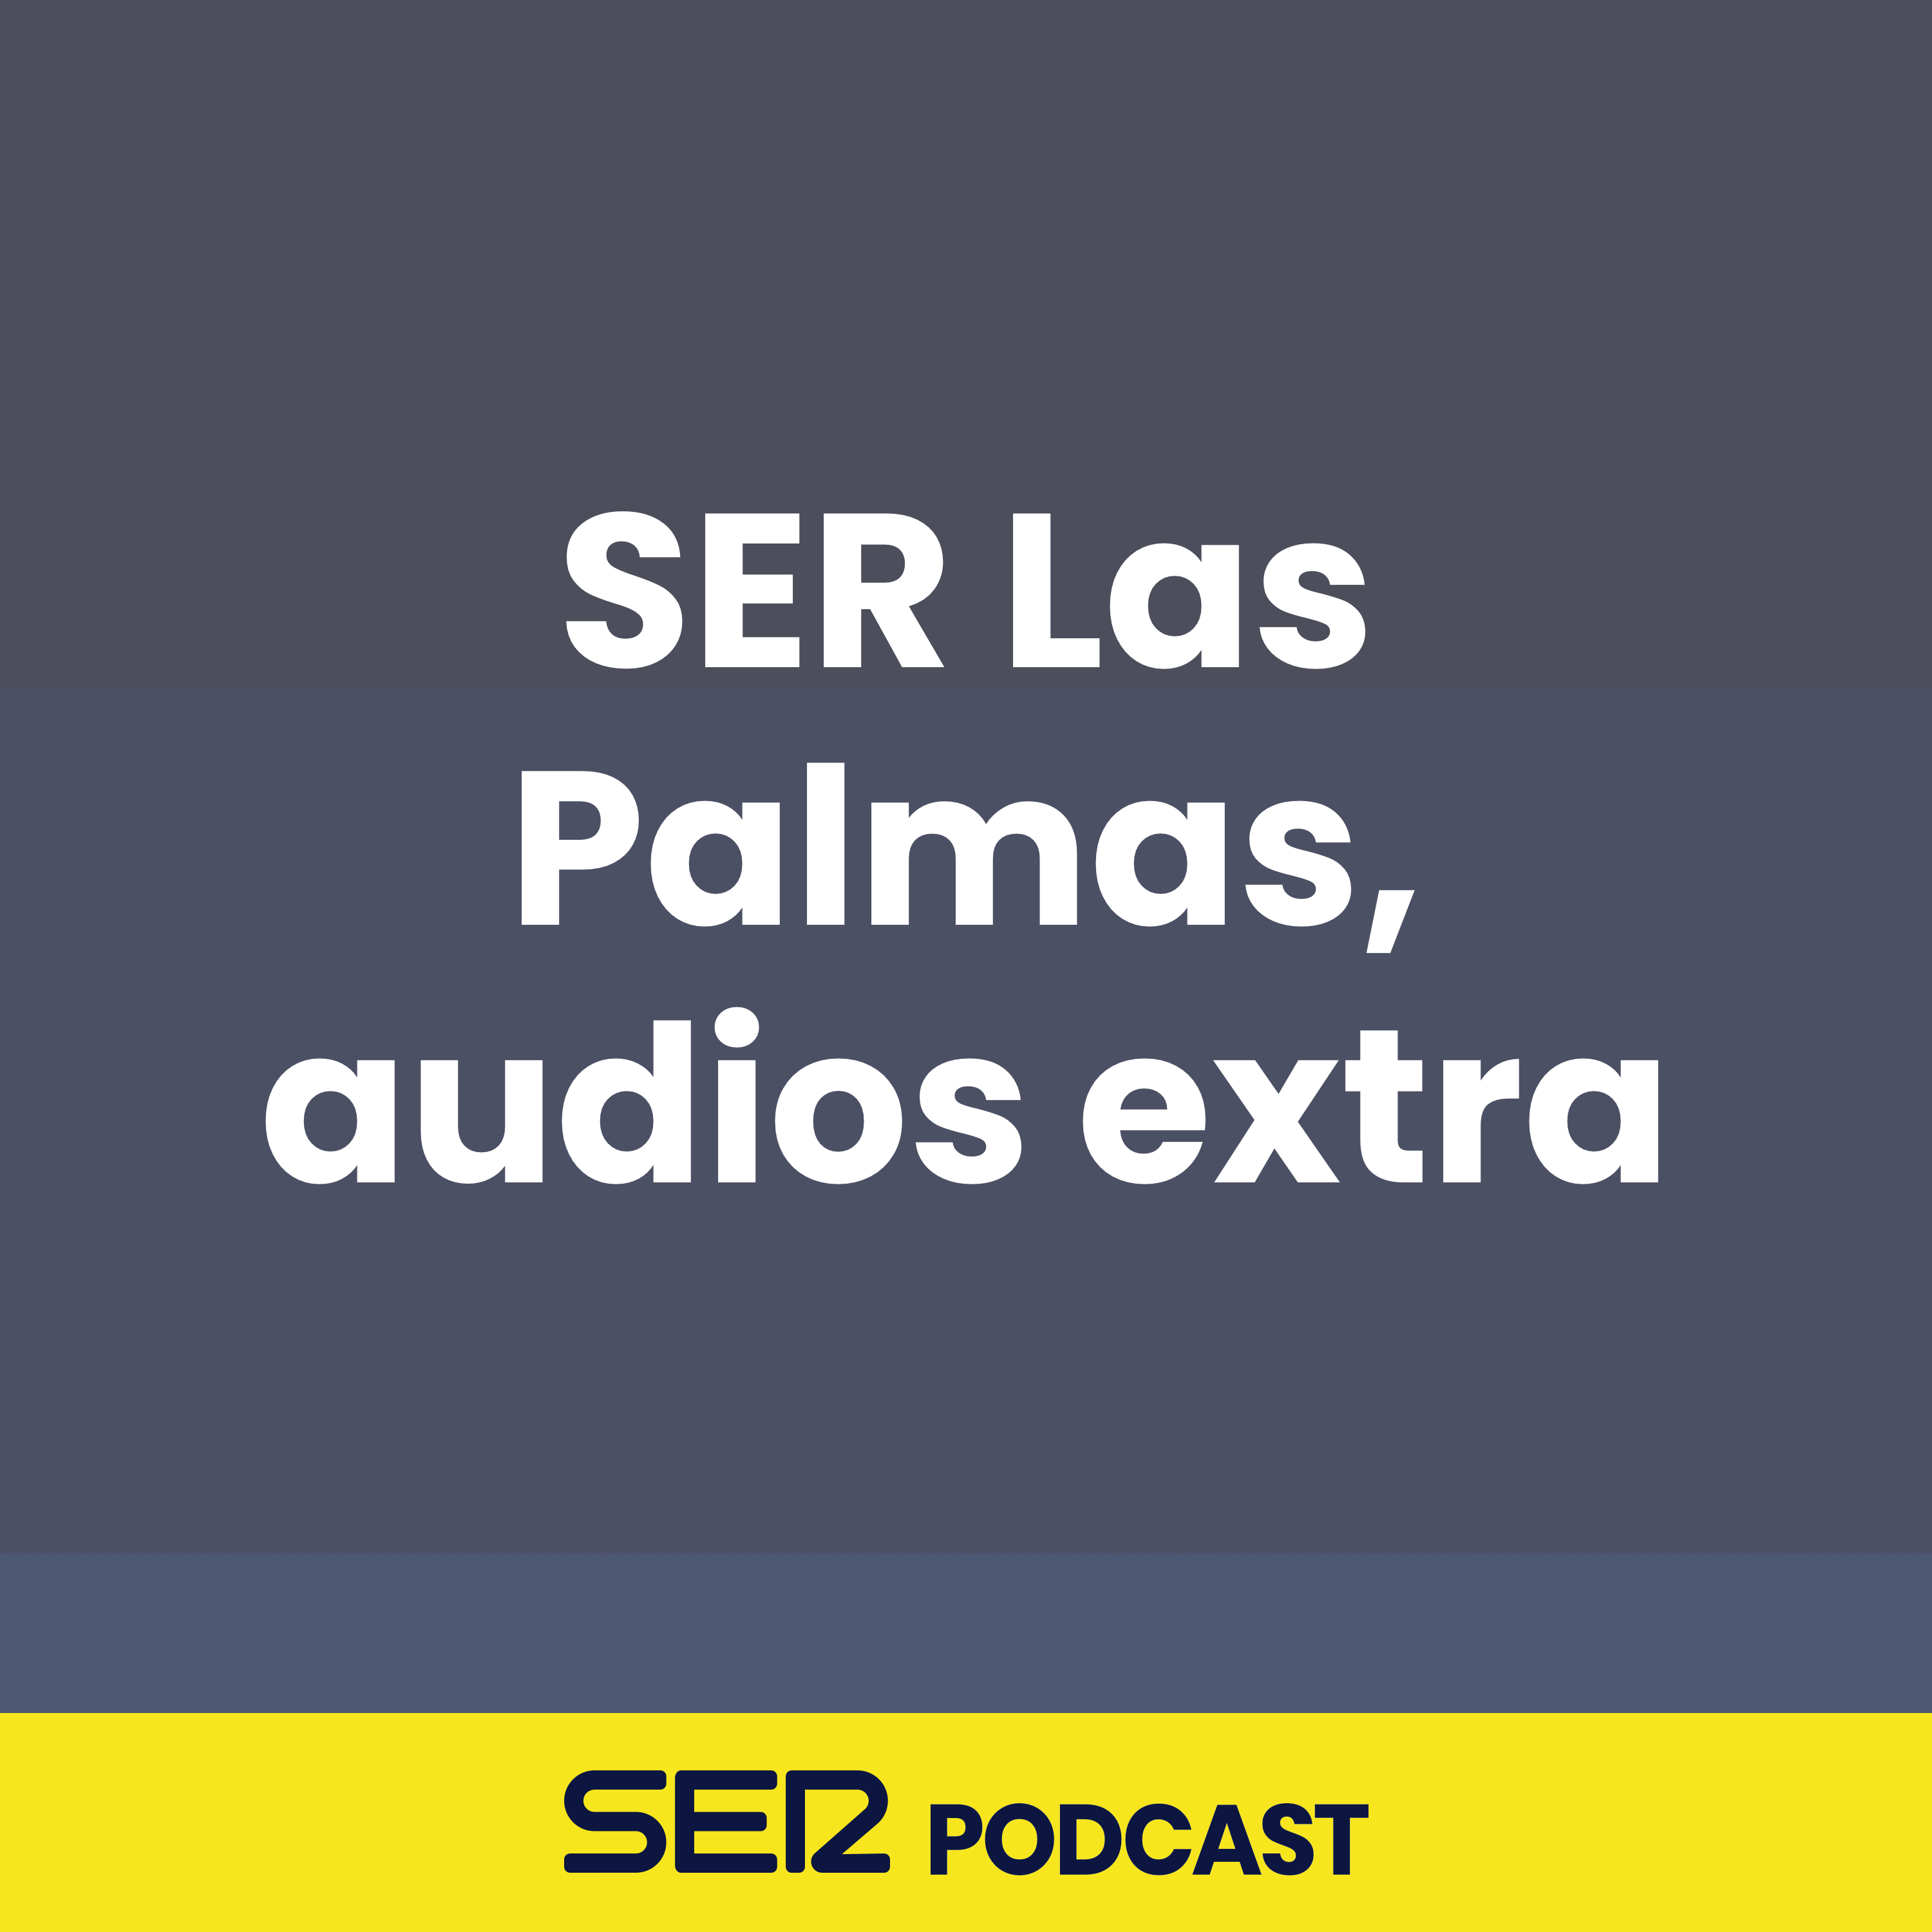 SER Las Palmas, audios extra